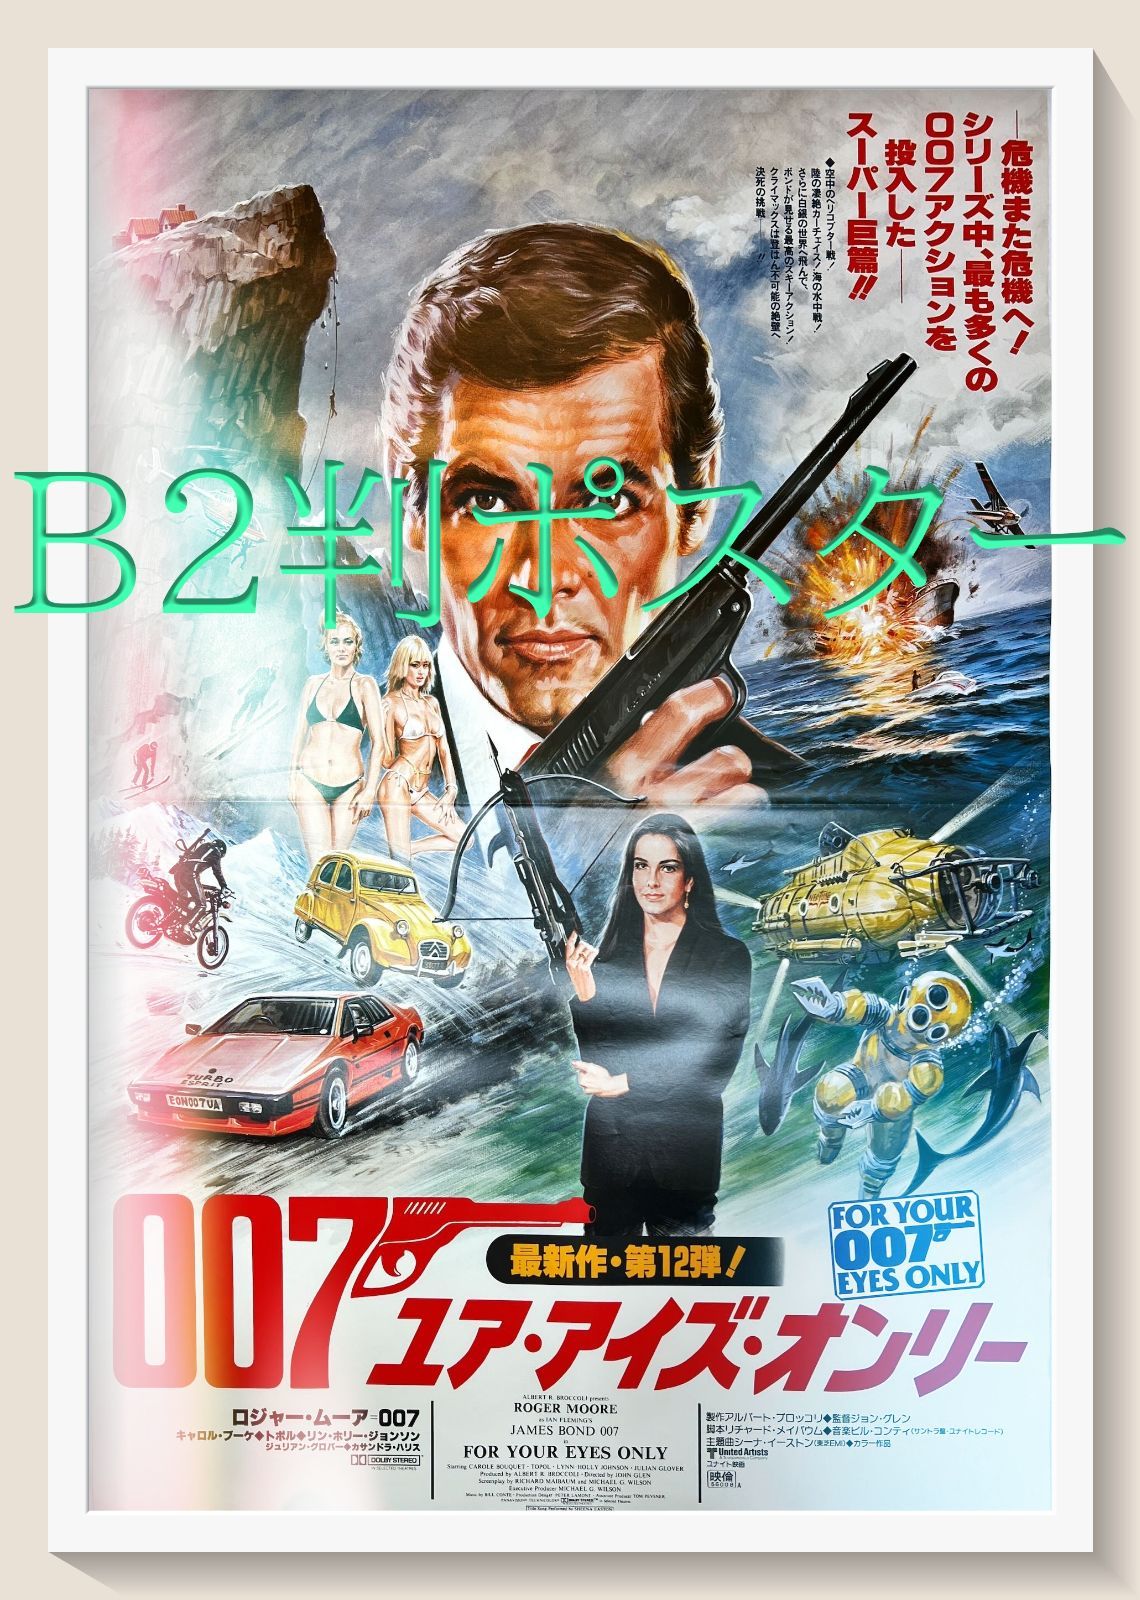 007劇場版ポスター、ユアアイズオンリーポスター